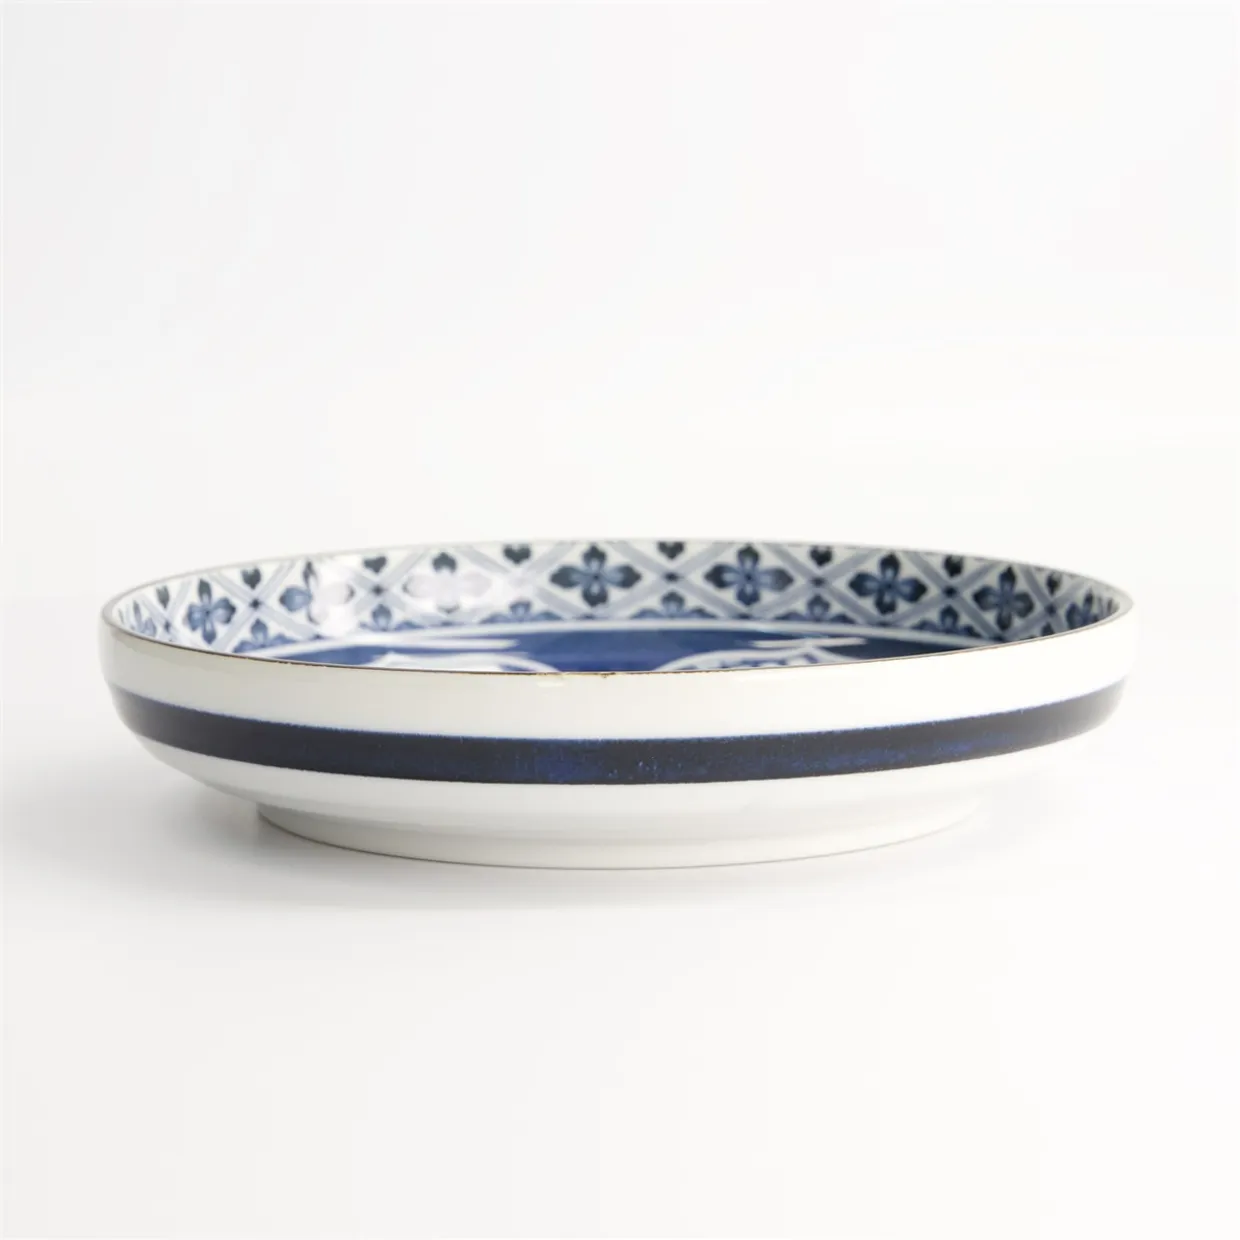 Pastabowl 20 cm - Mixed bowls - Matori Hishimon